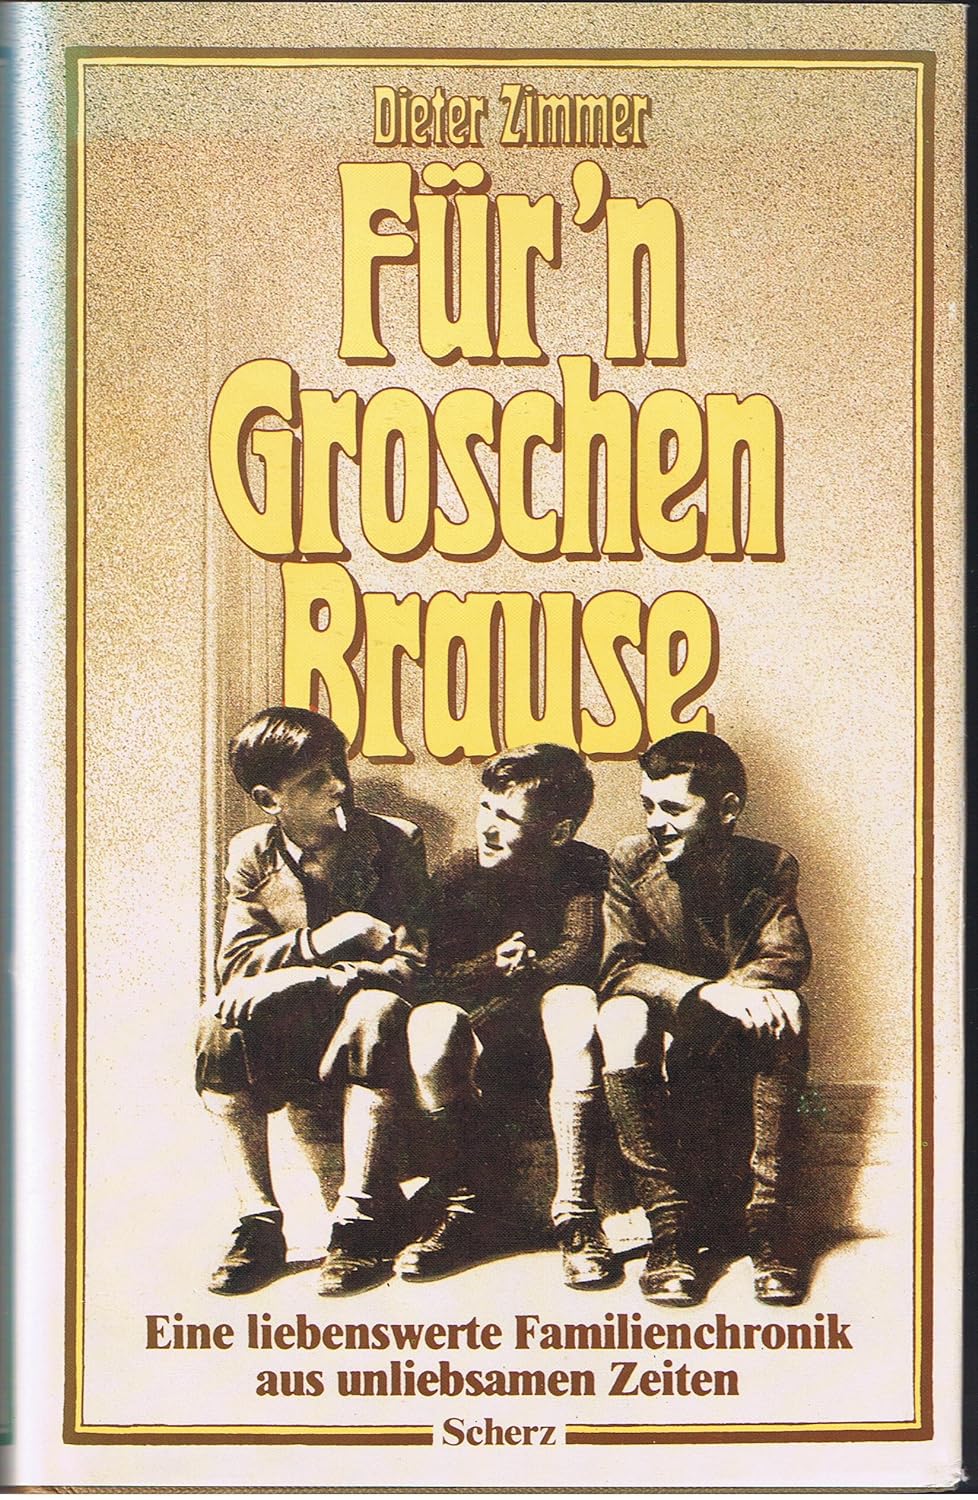 Für'n Groschen Brause (Hardcover, Deutsch language, Scherz)